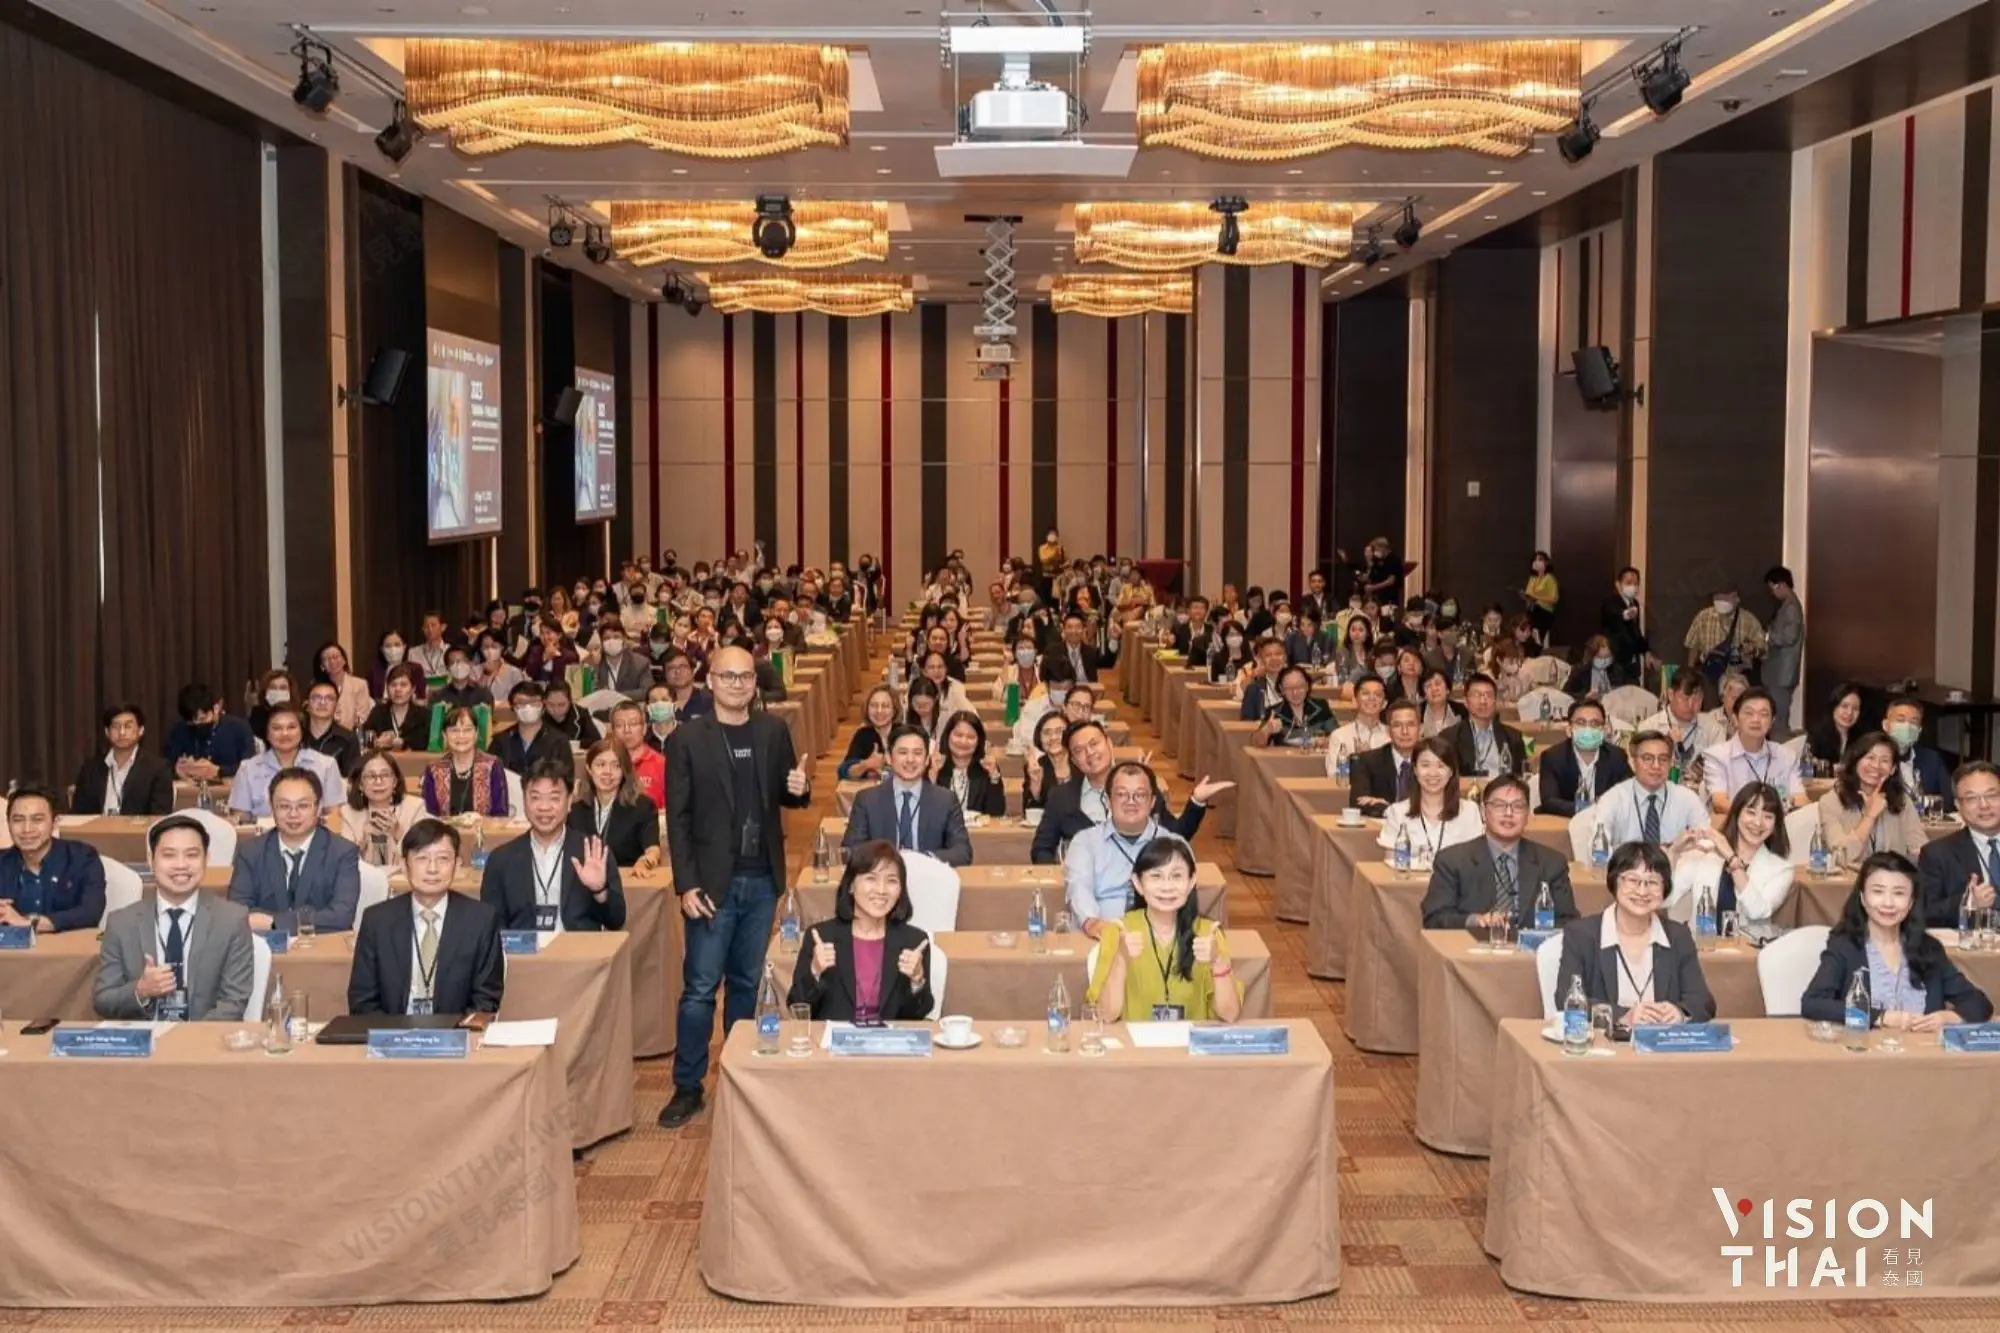 台泰智慧醫療研討會盛況空前 彰基助台業者開拓泰國市場（圖片來源：Vision Thai 看見泰國）